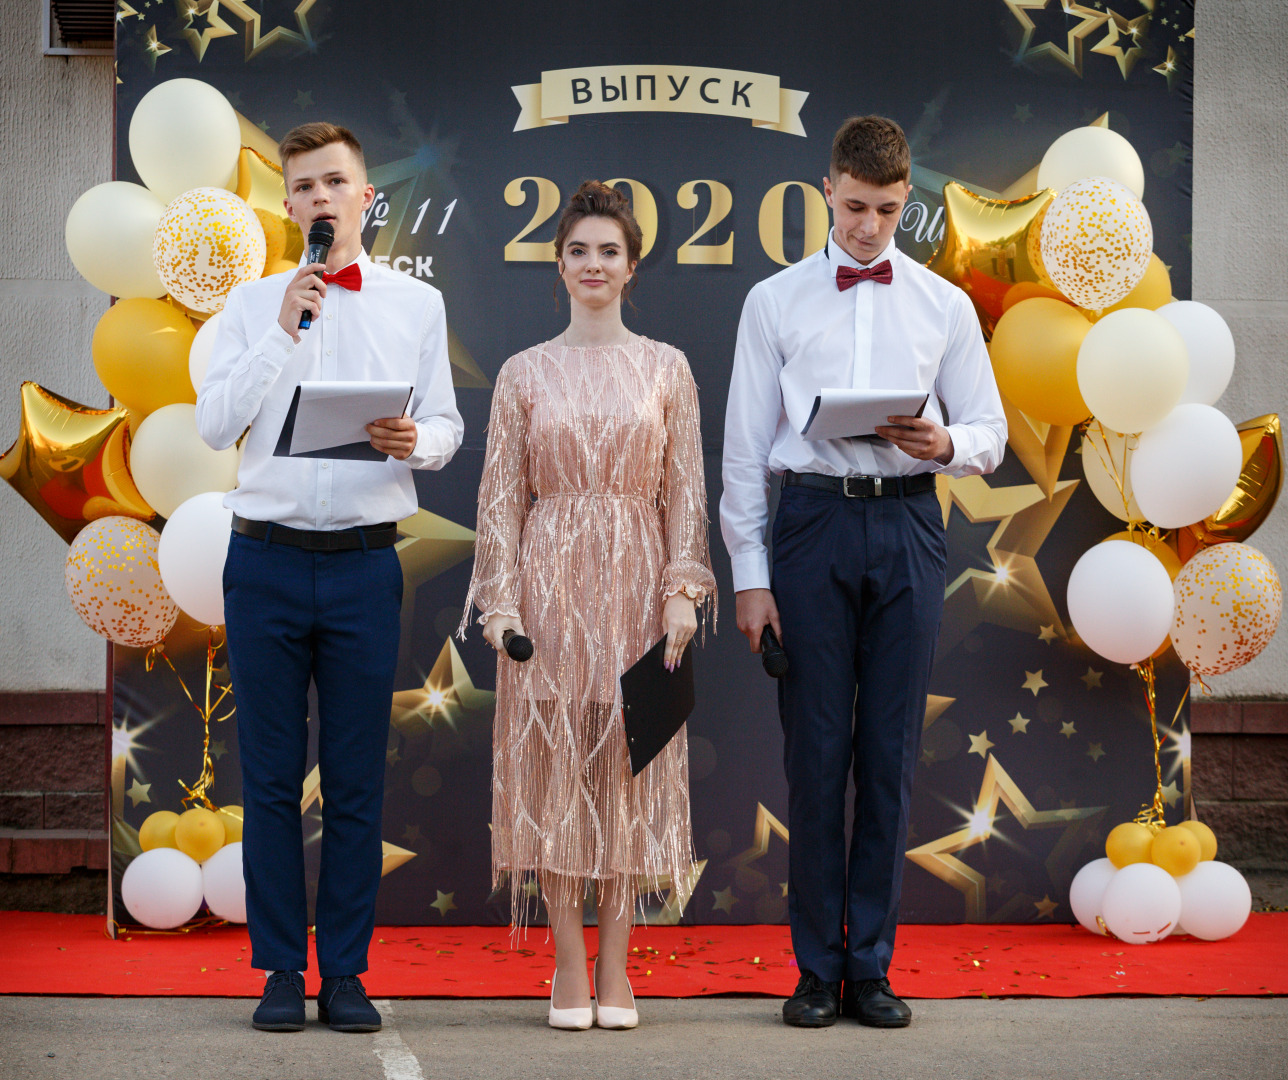 Детский, рекламный, семейный фотограф Виталий Шерепченков , Витебск, фотография от 18.06.2020